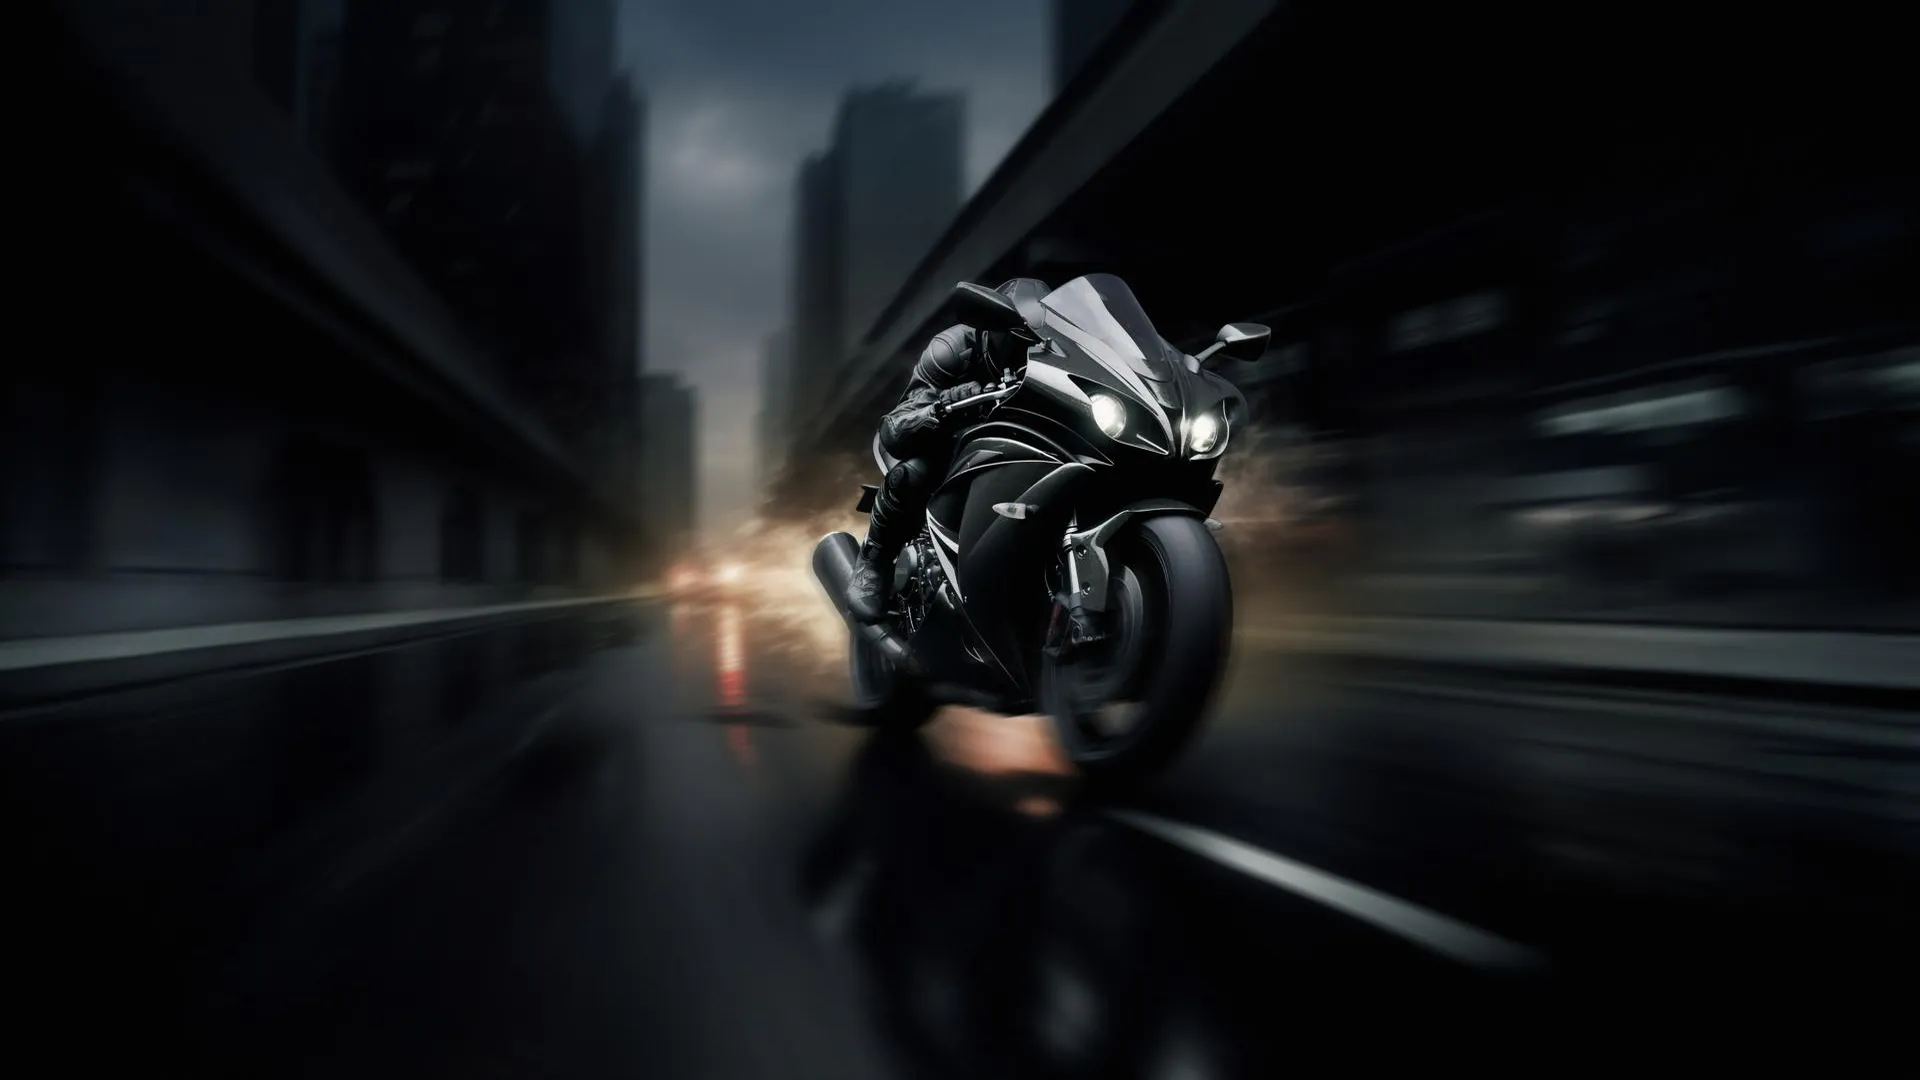 Идет розыск черного мотоцикла Honda по делу о нападении на полицейских в Подмосковье